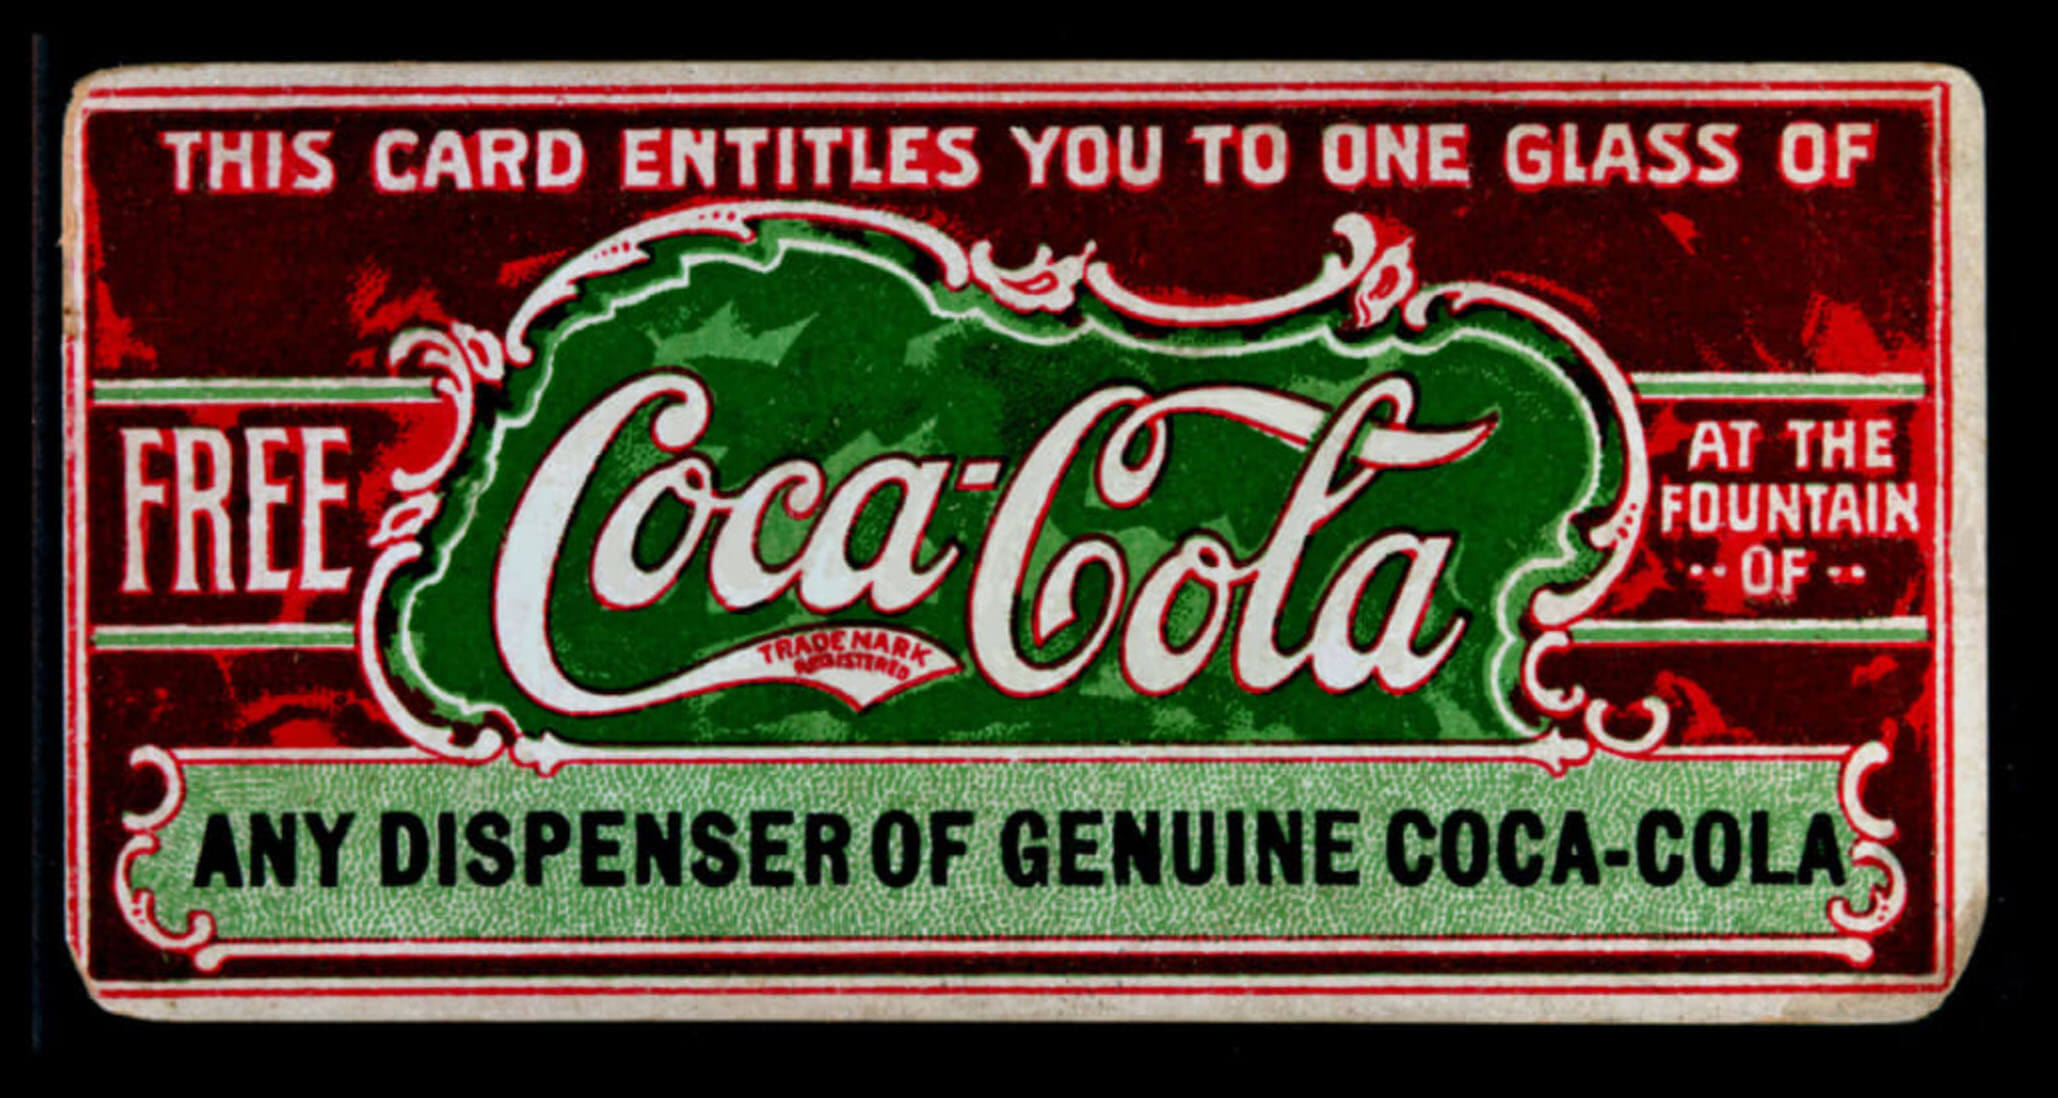 Coca-Cola Branding